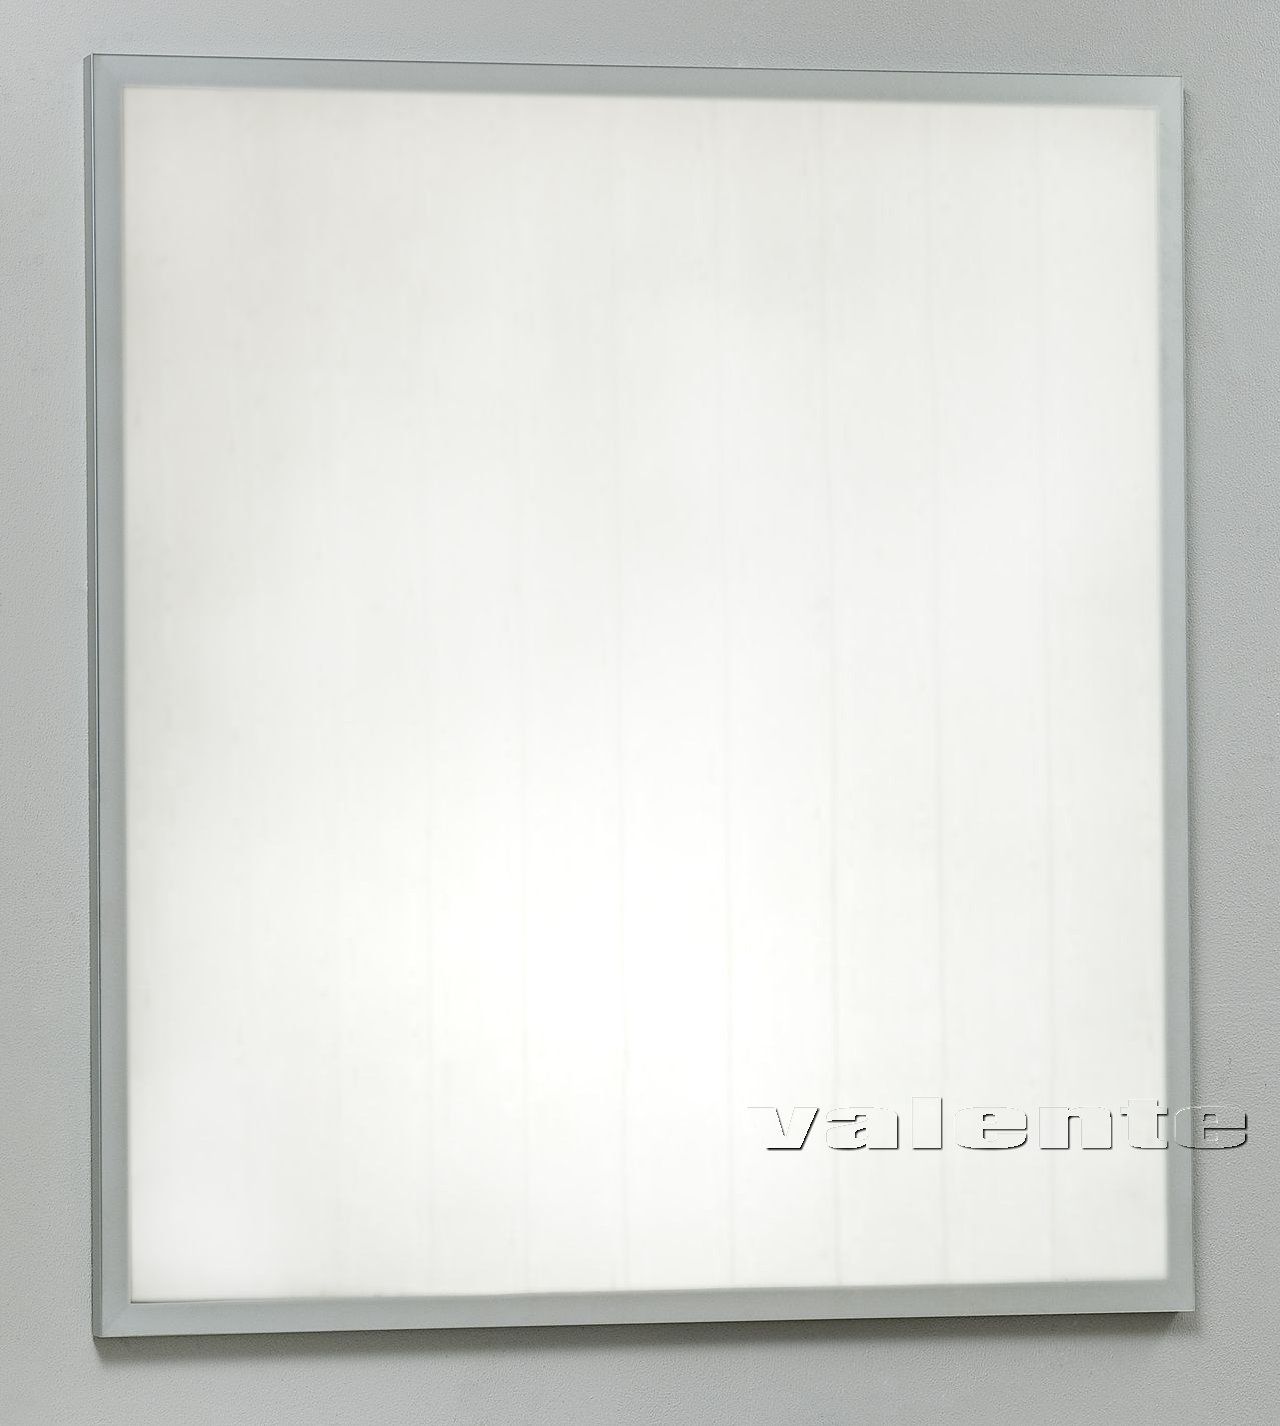 Зеркало в ванную Severita S31 (Северита С31) 110х110 схема 1